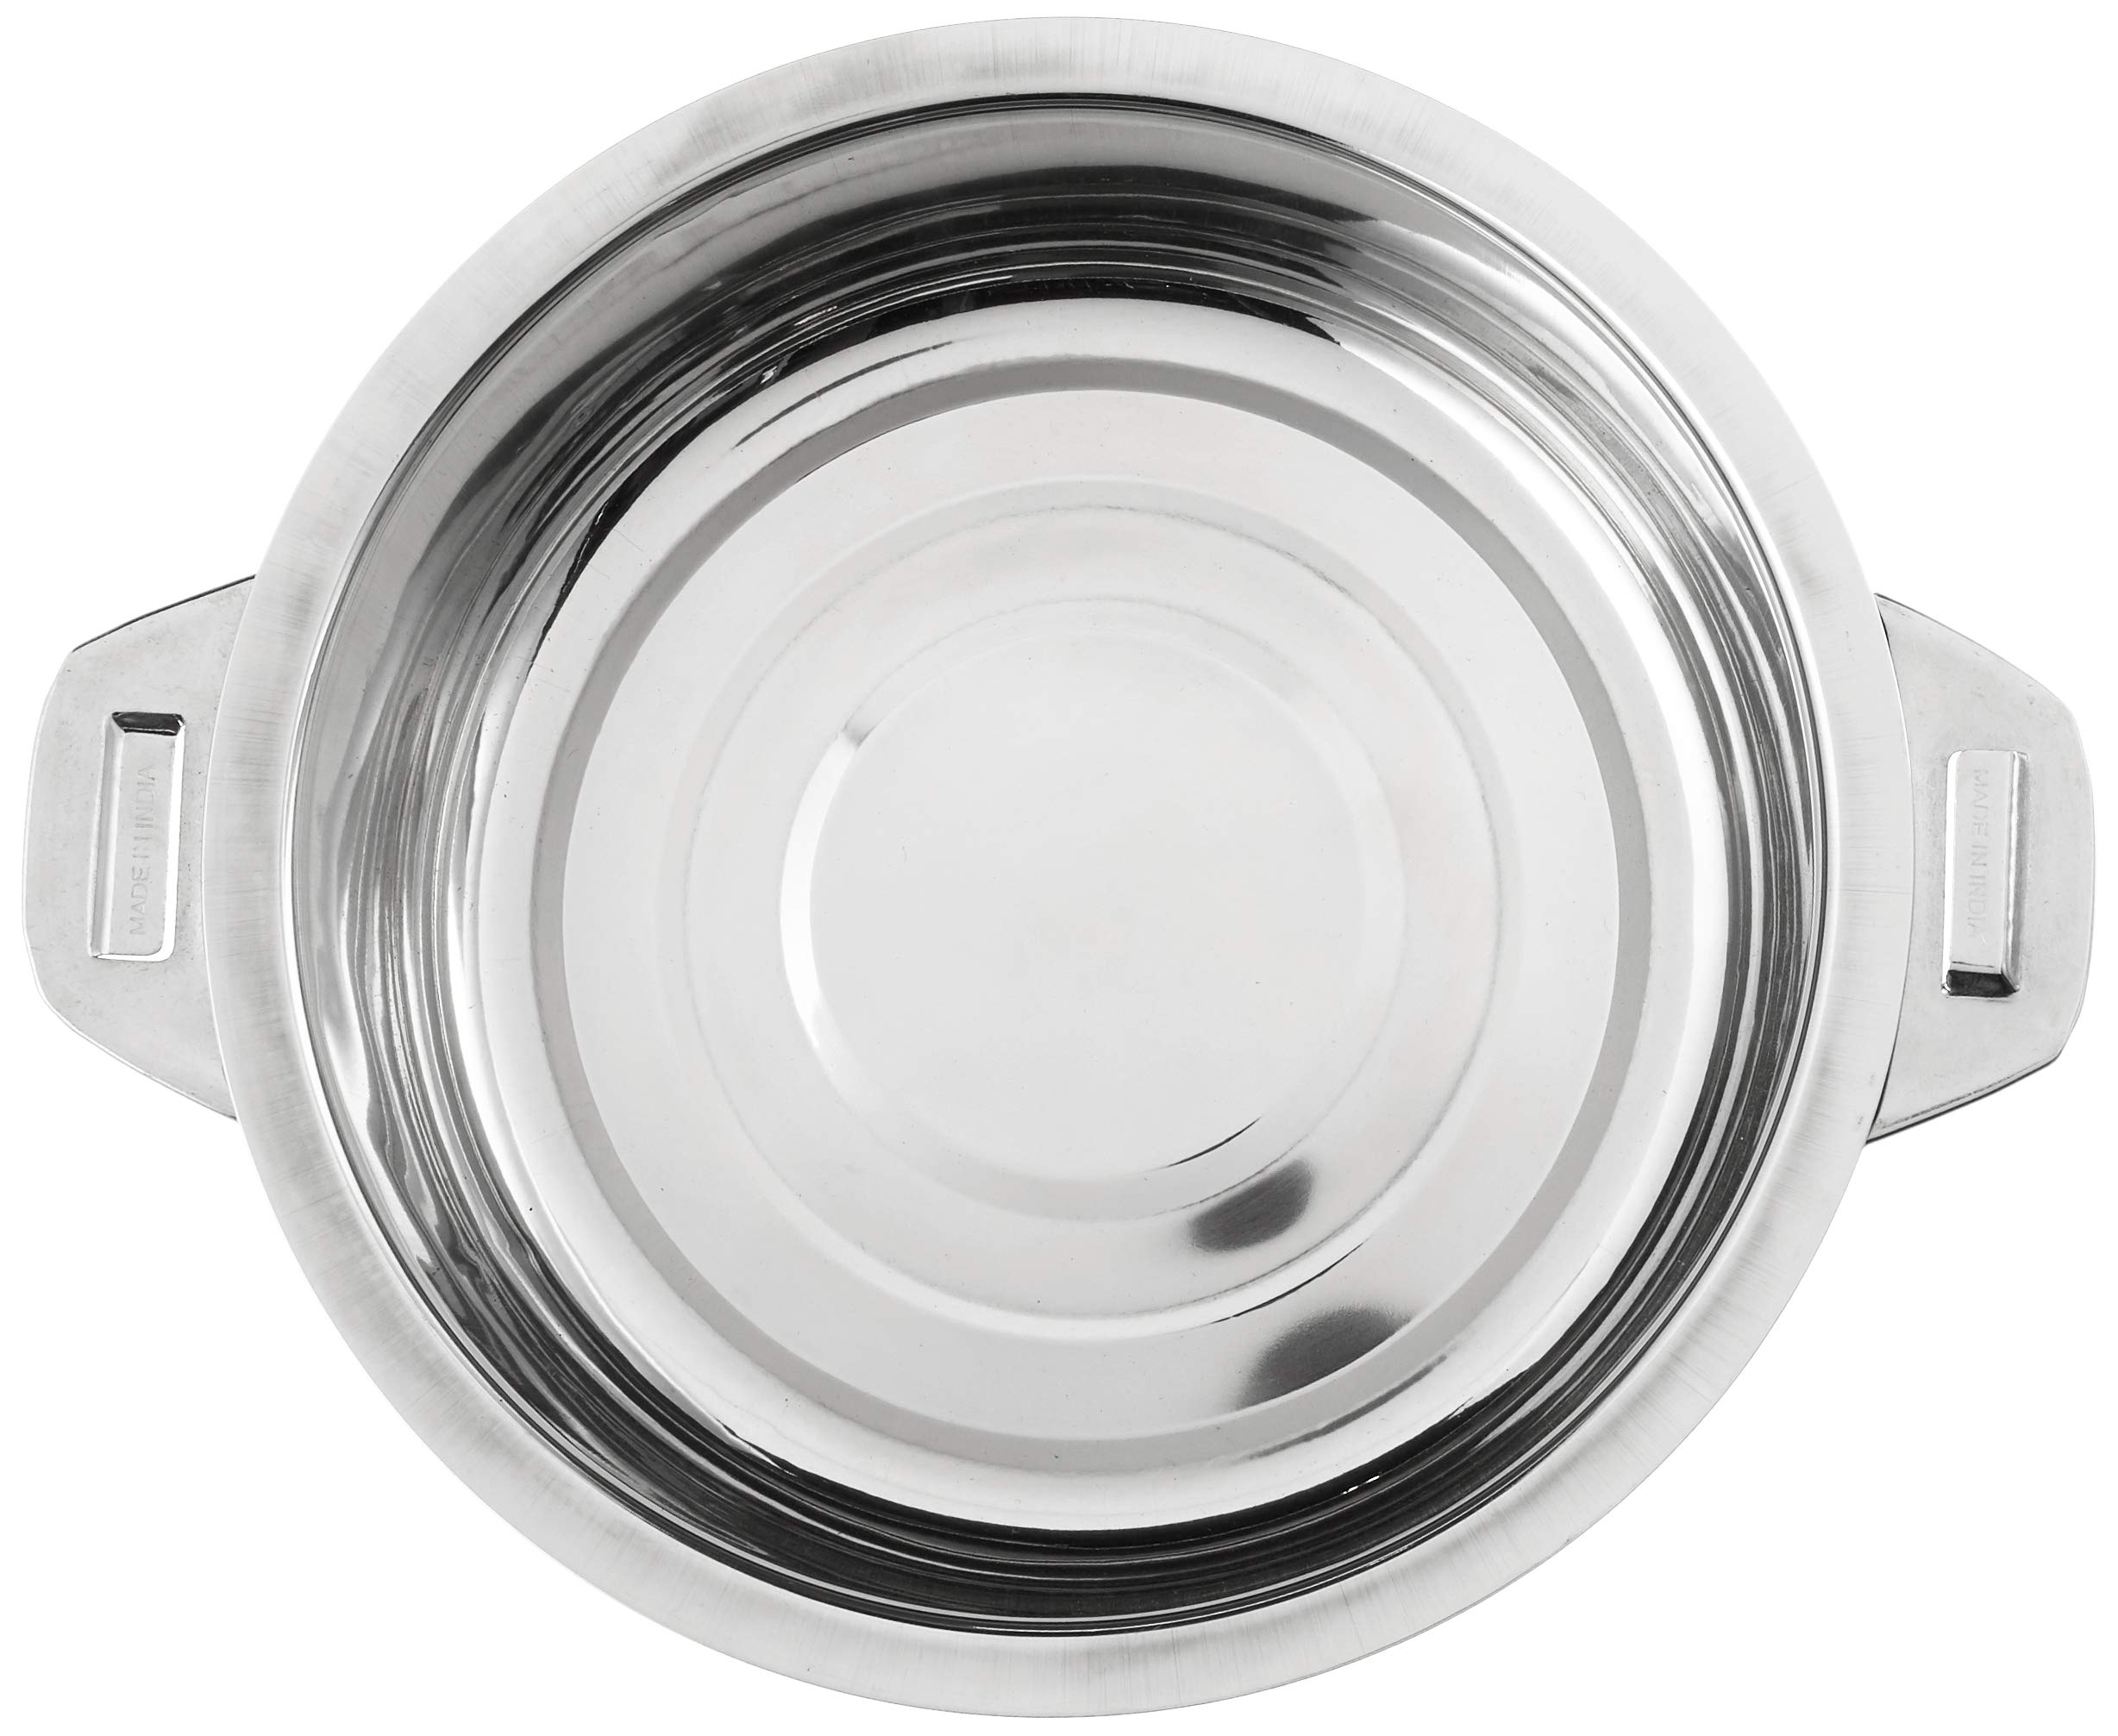 Vinod 4-Piece Insulated Casserole Food Warmer/Cooler Hot Pot Gift Set, 4000mL+5000mL+7500mL+10000mL, Stainless Steel